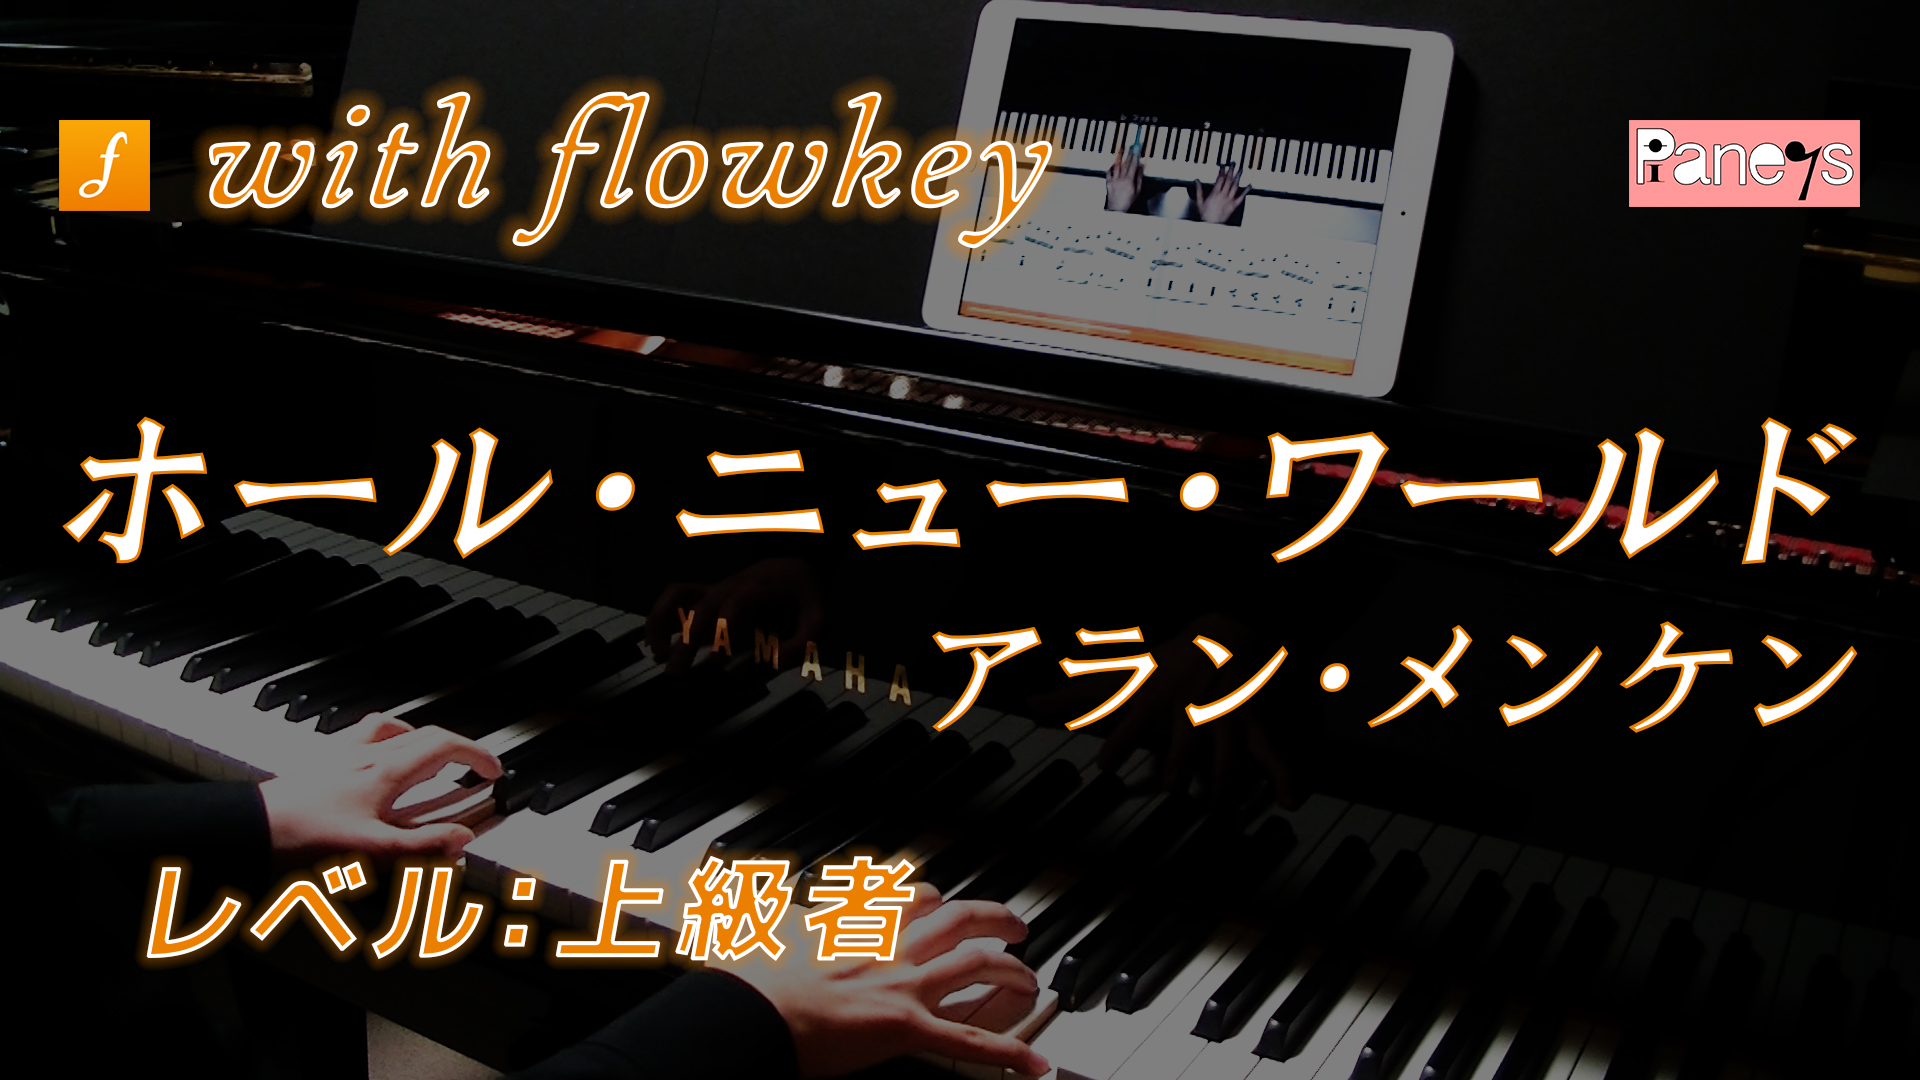 ホール ニュー ワールド アラン メンケン をflowkeyで演奏してみた ピアノの先生のブログ ピアノライフ